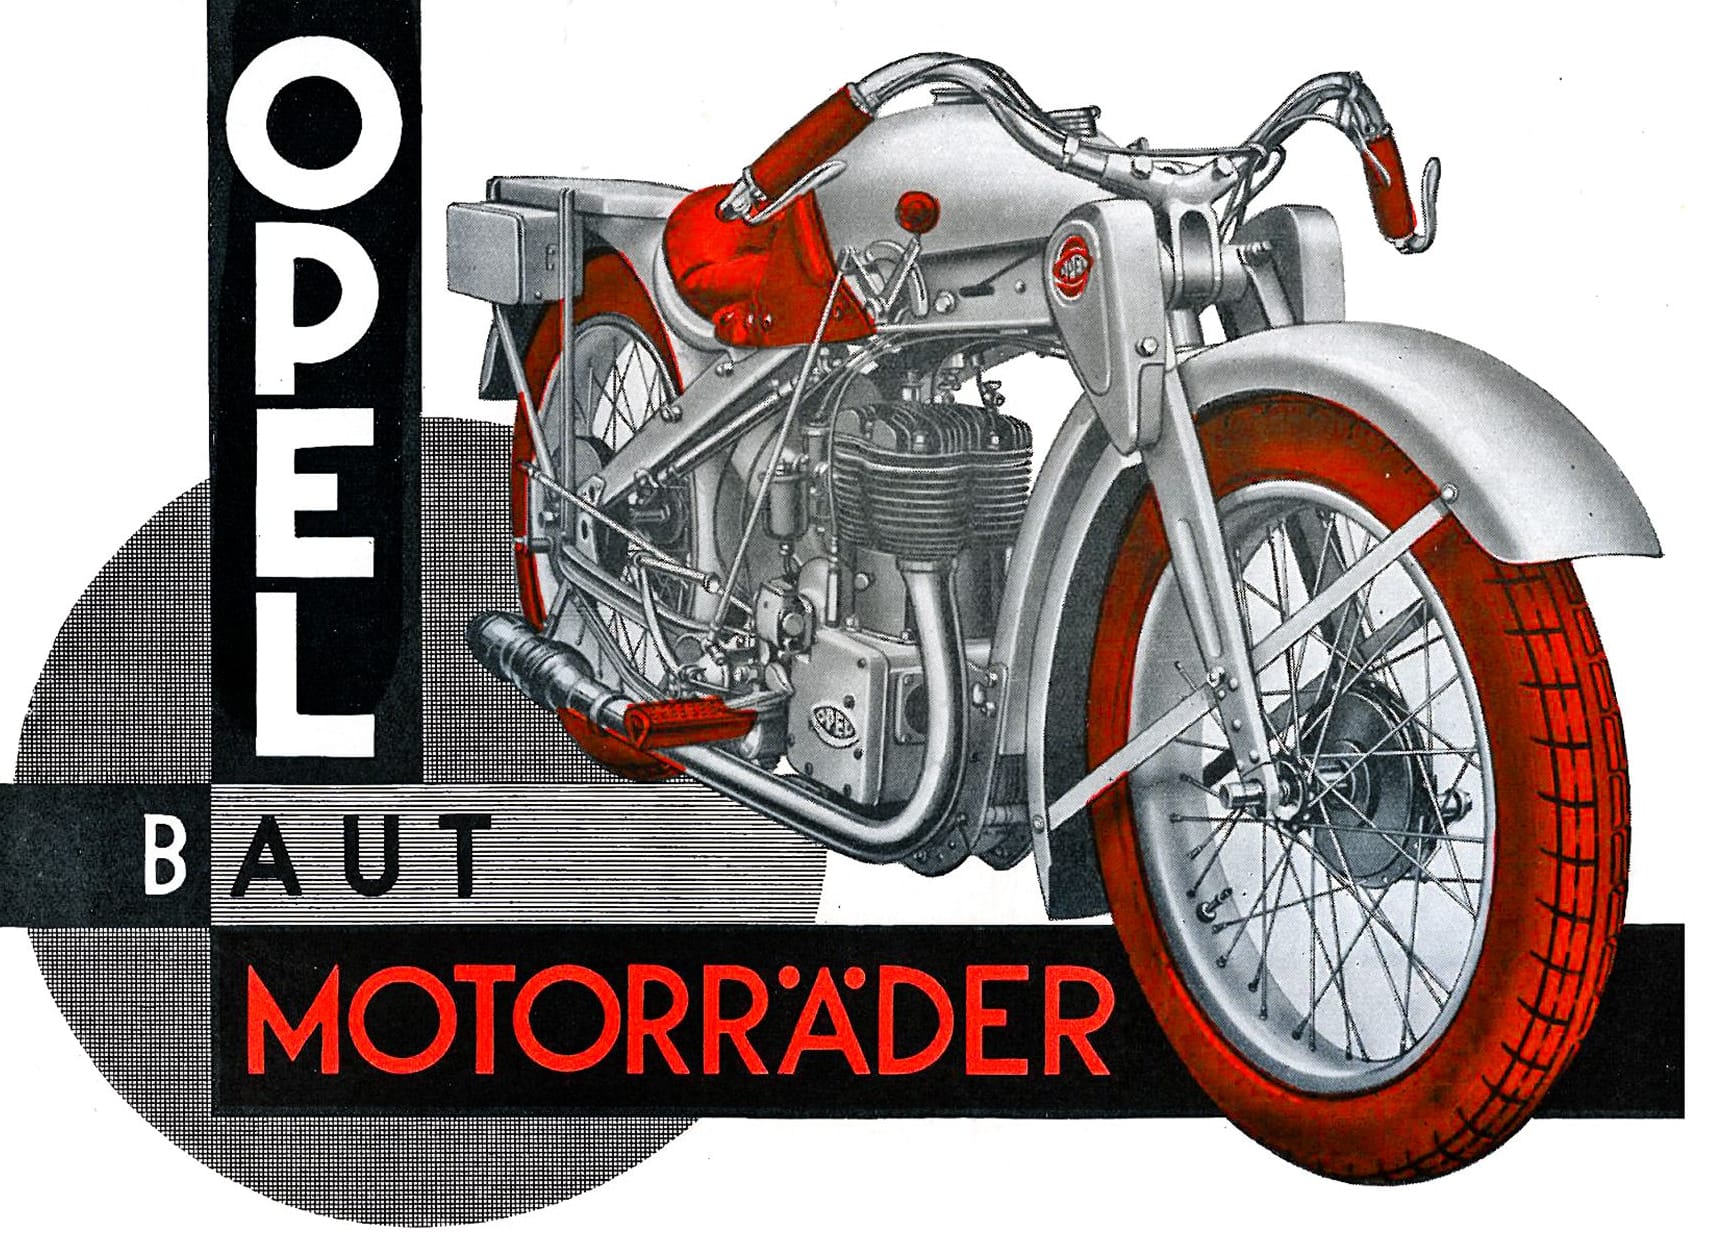 Opel Motoclub: Das avantgardistisches Modell mit markanten roten Reifen war eines der ersten Motorräder mit Pressstahlrahmen und wurde 1928 vorgestellt. Mit seiner Einstellung 1930 endete die Motorrad-Ära bei Opel.